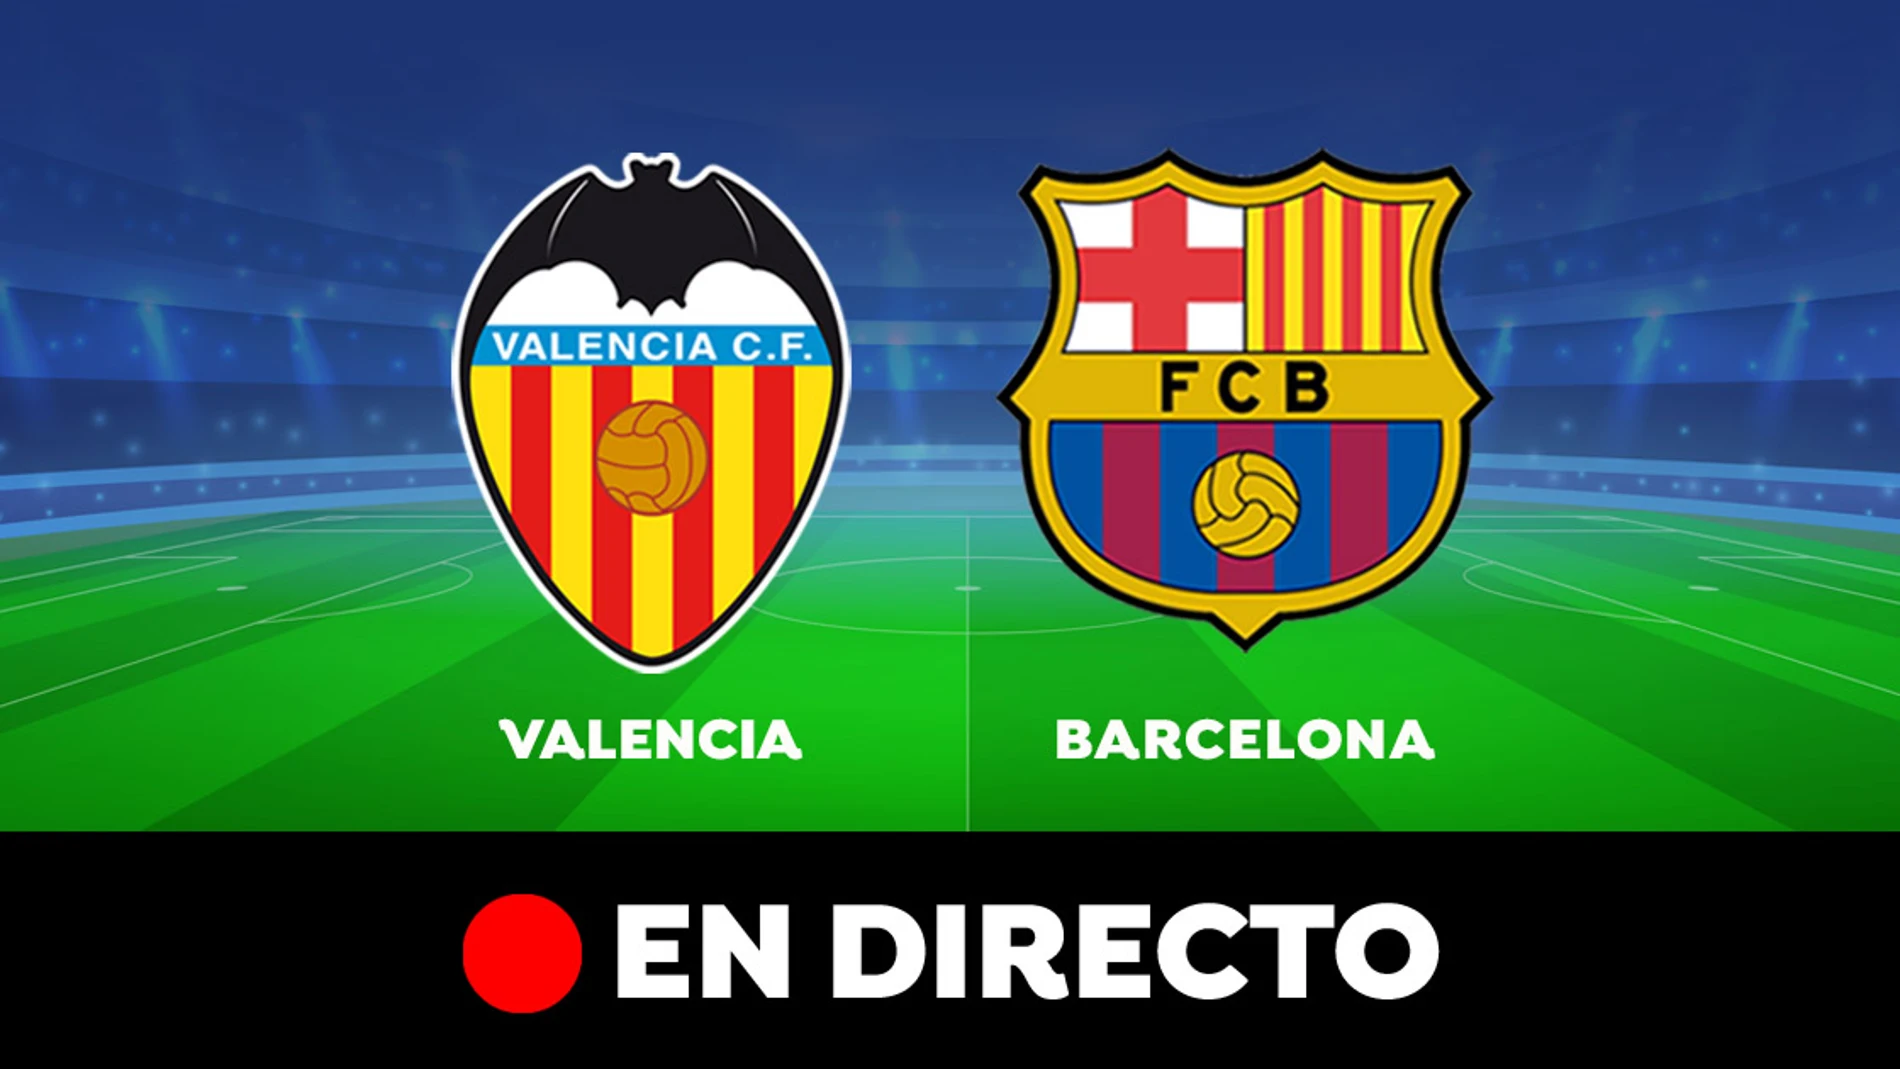 Valencia - Barcelona: Resultado y goles del partido de hoy, en directo | Liga Santander